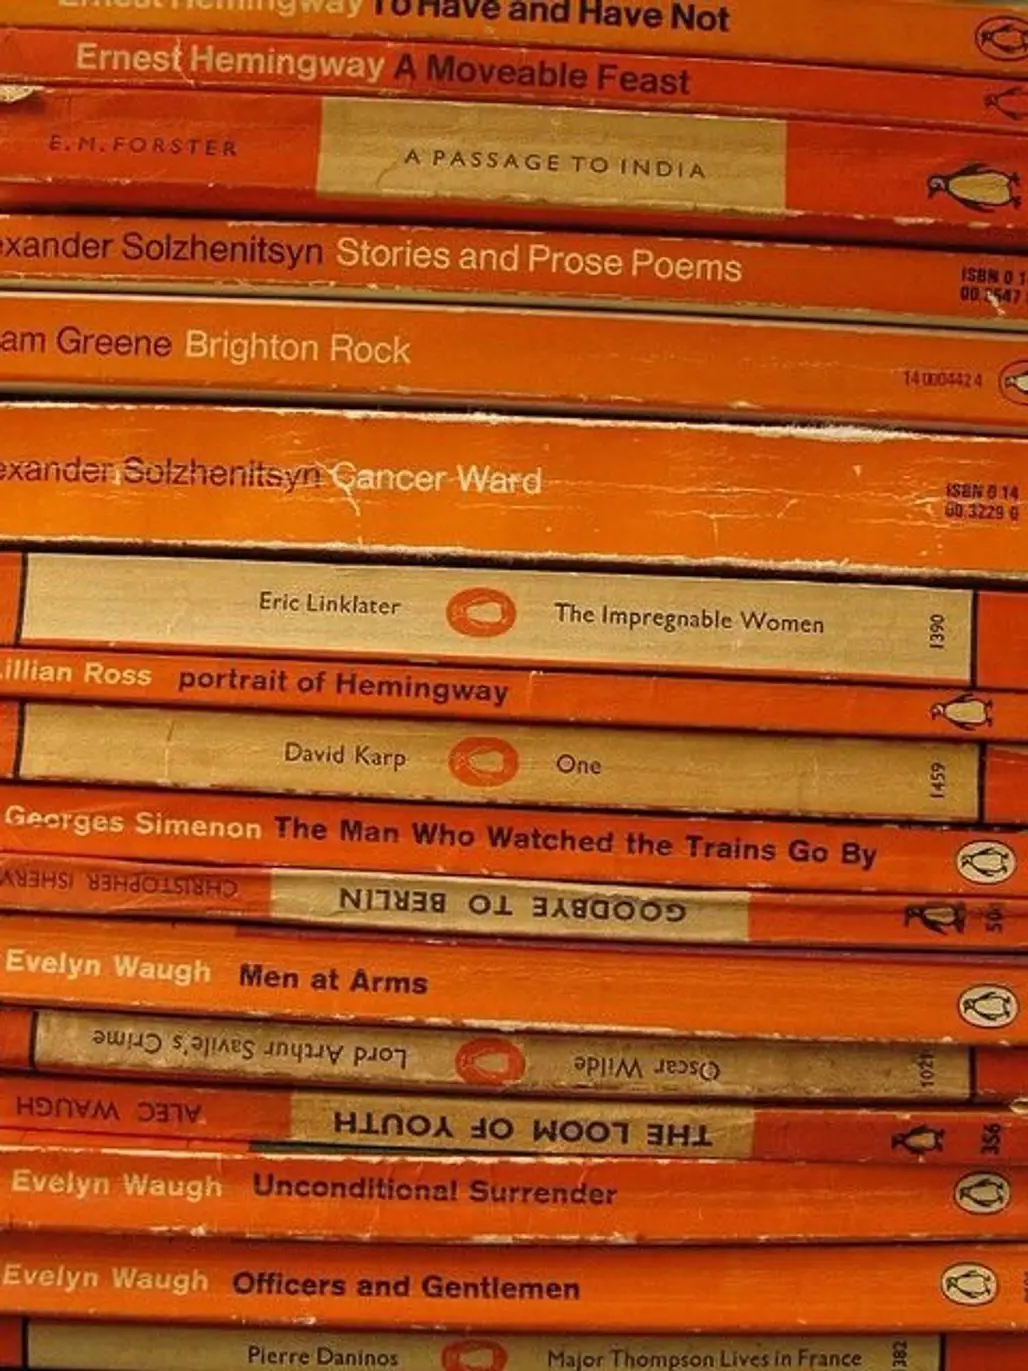 Orange Books